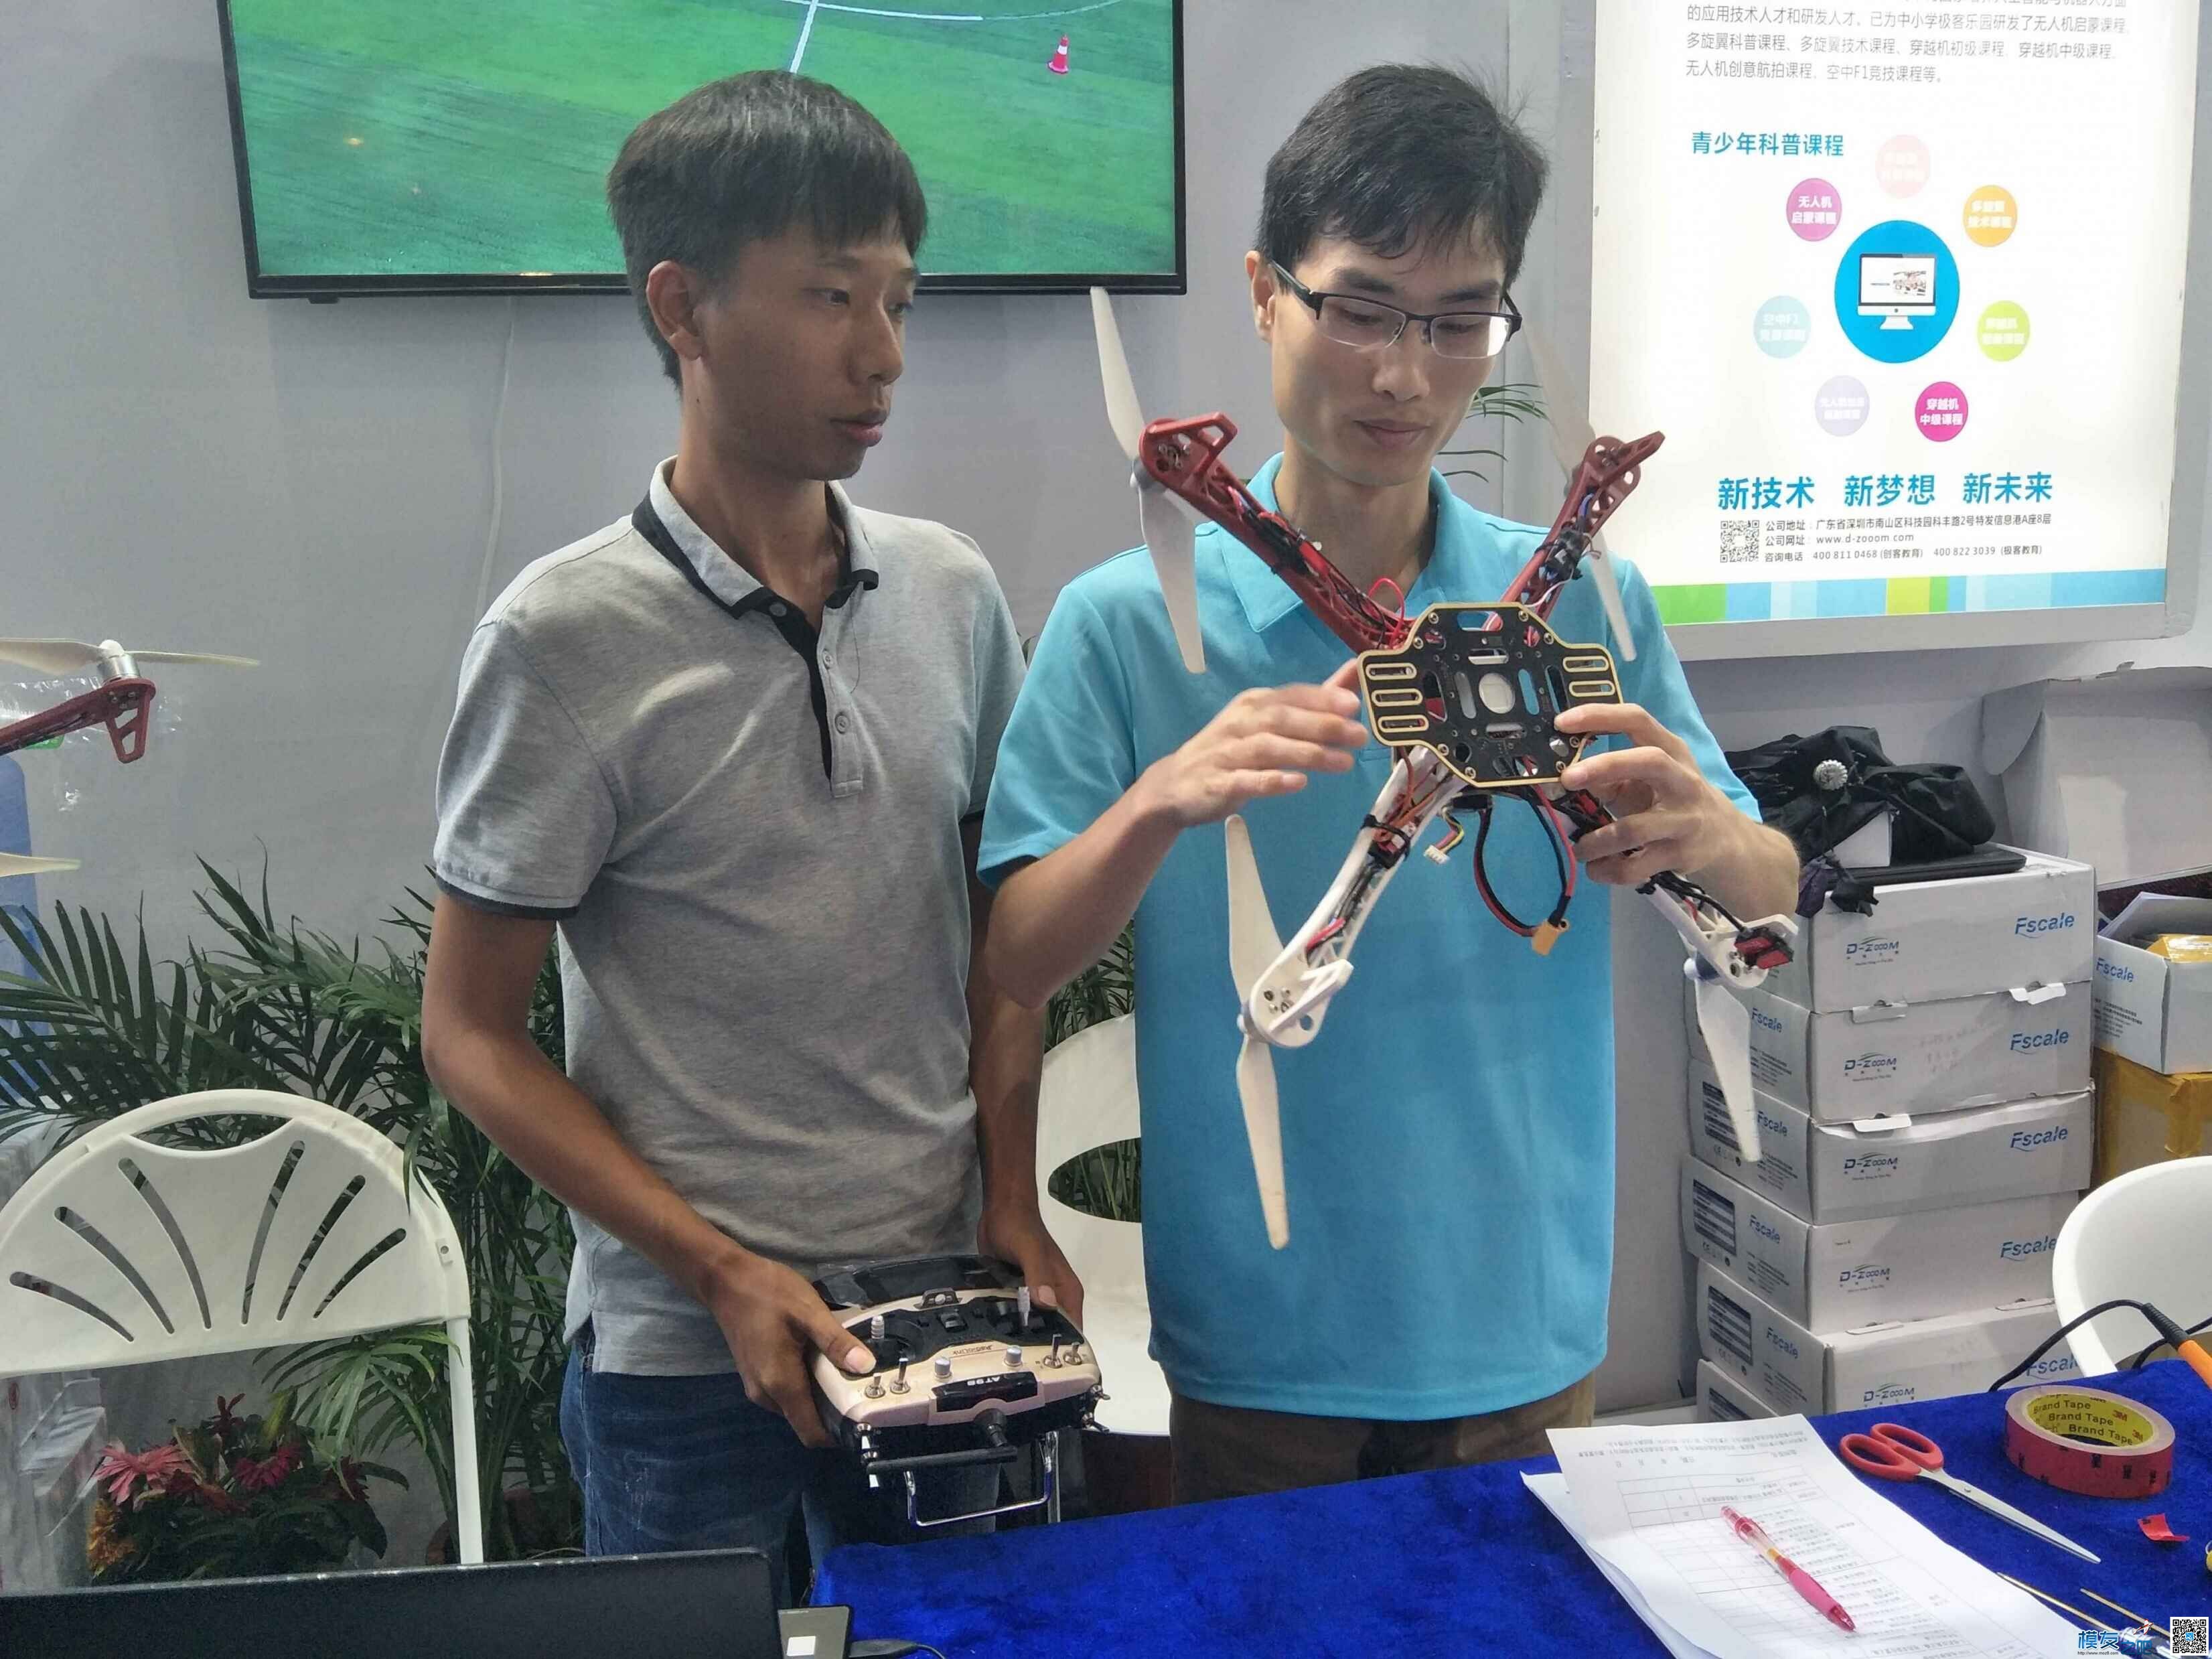 中科大智携手乐迪电子举办第二届无人机组装大赛 行业协会,技能人才,外观设计,深圳市,无人机 作者:乐迪support 2203 